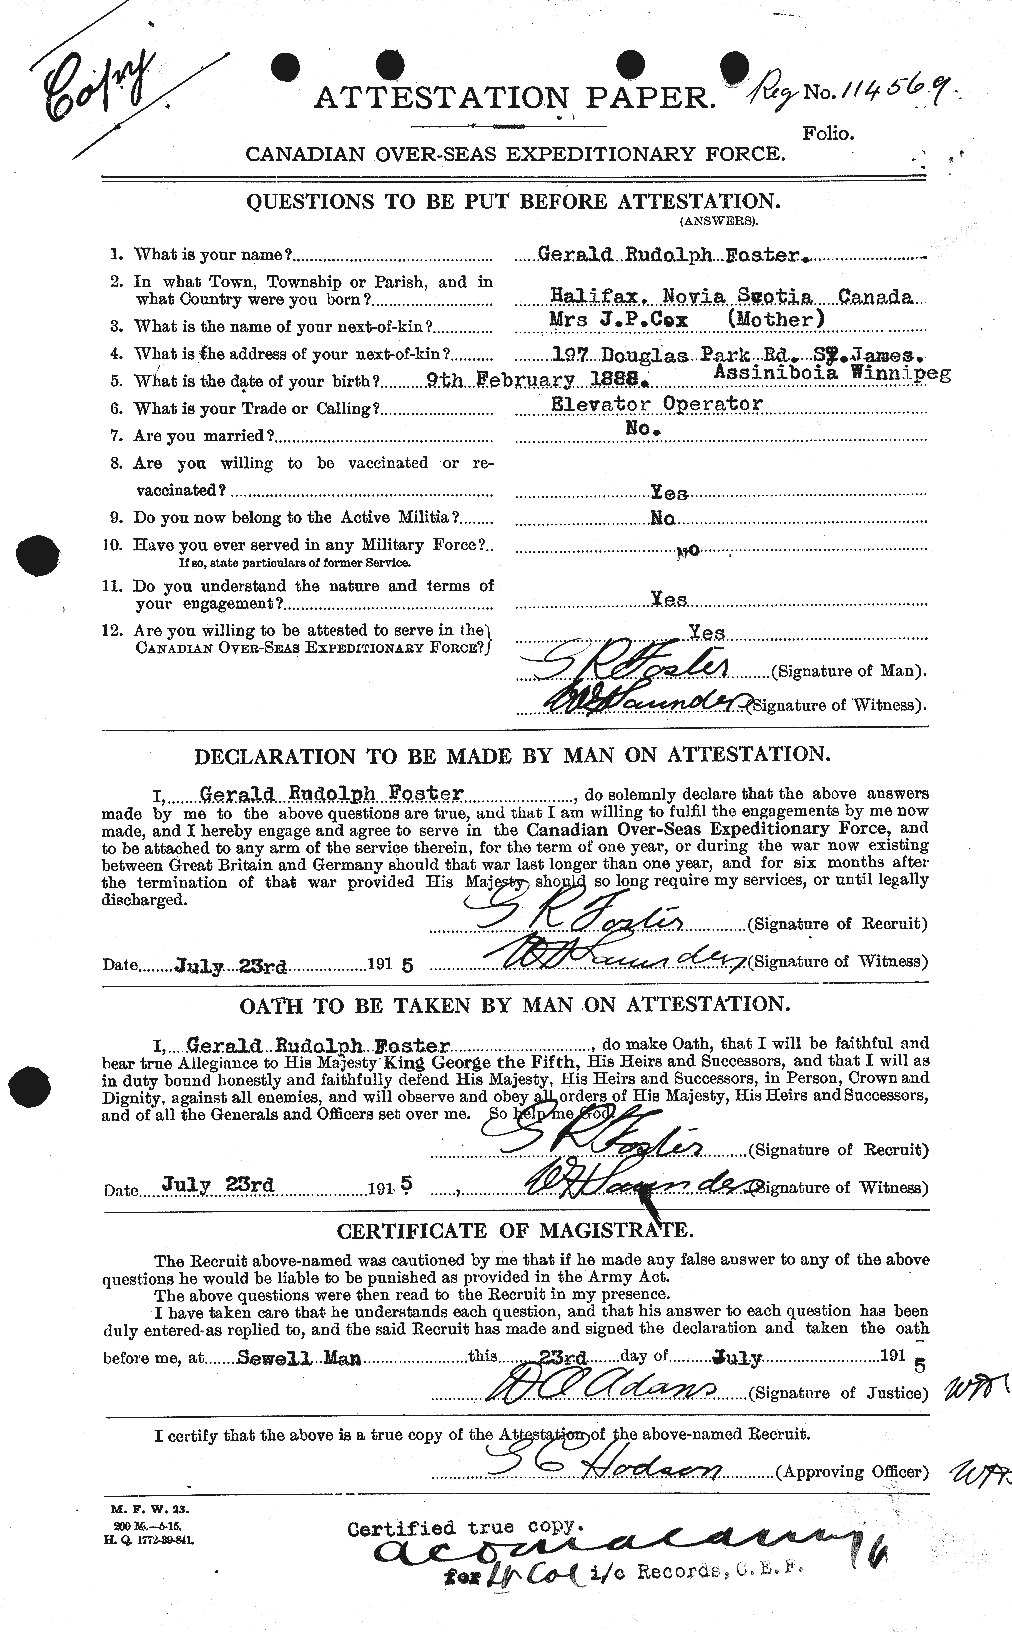 Dossiers du Personnel de la Première Guerre mondiale - CEC 330710a